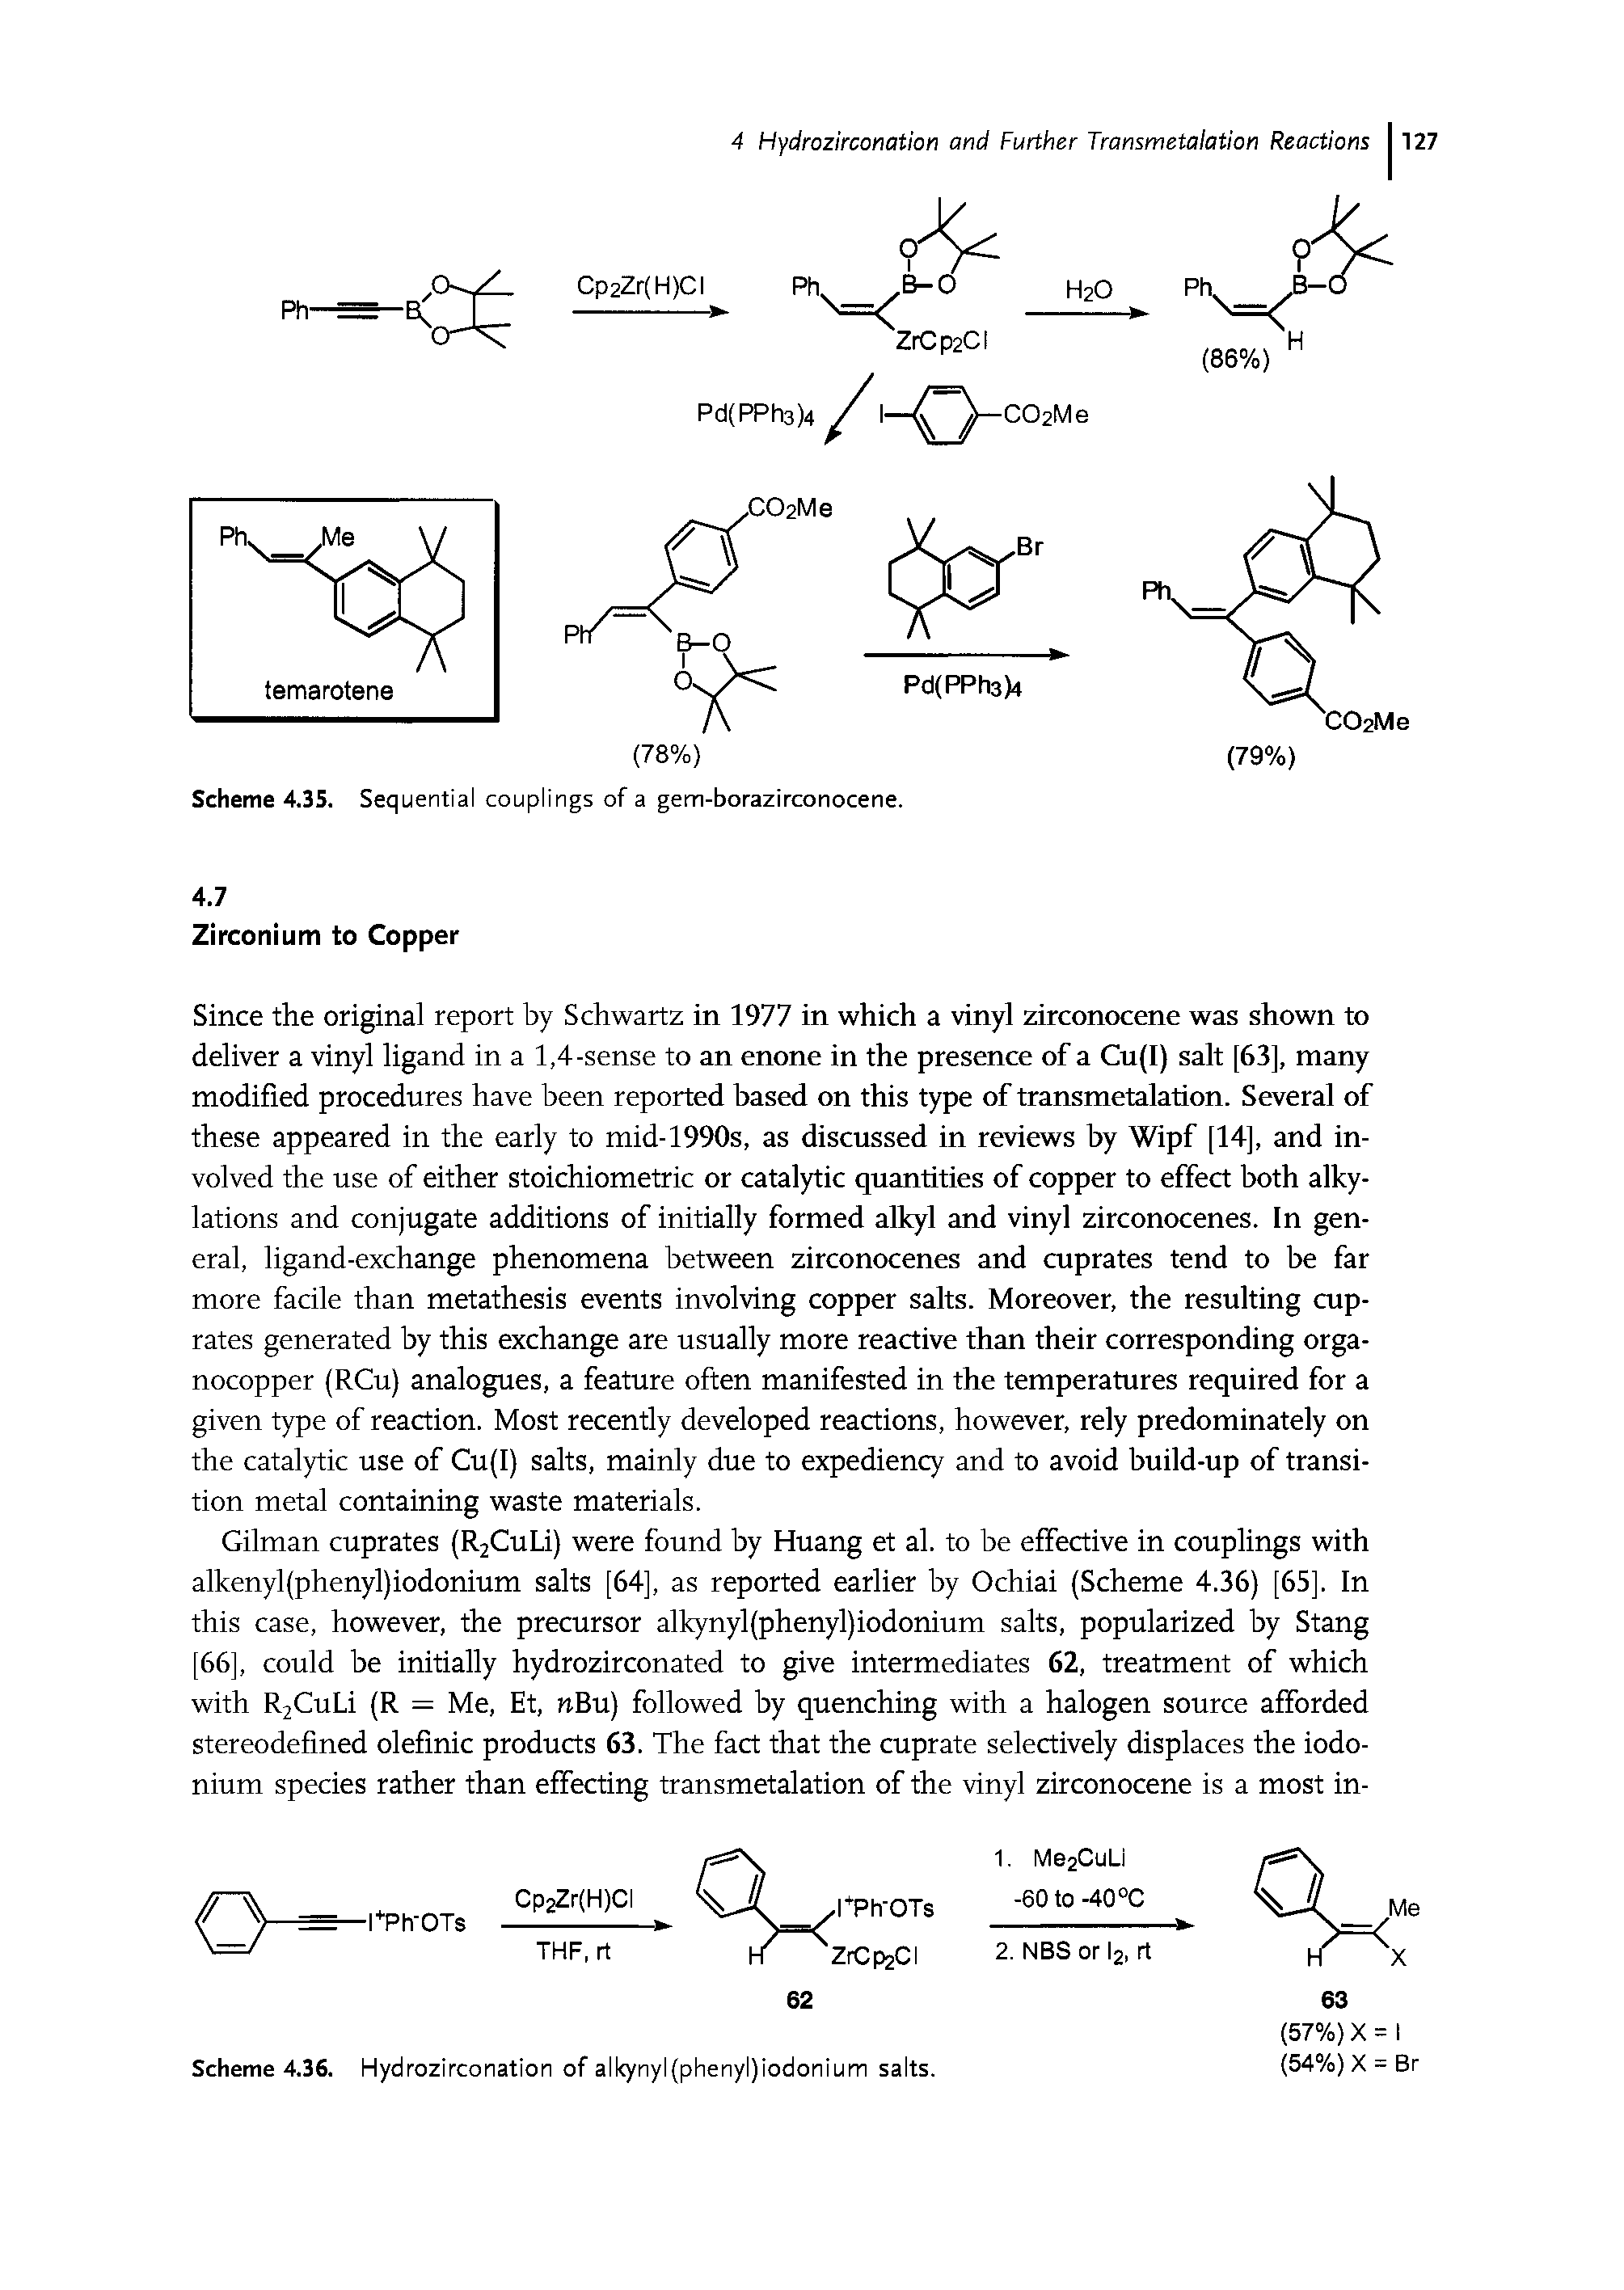 Scheme 4.36. Hydrozirconation of alkynyl(phenyl)iodonium salts.